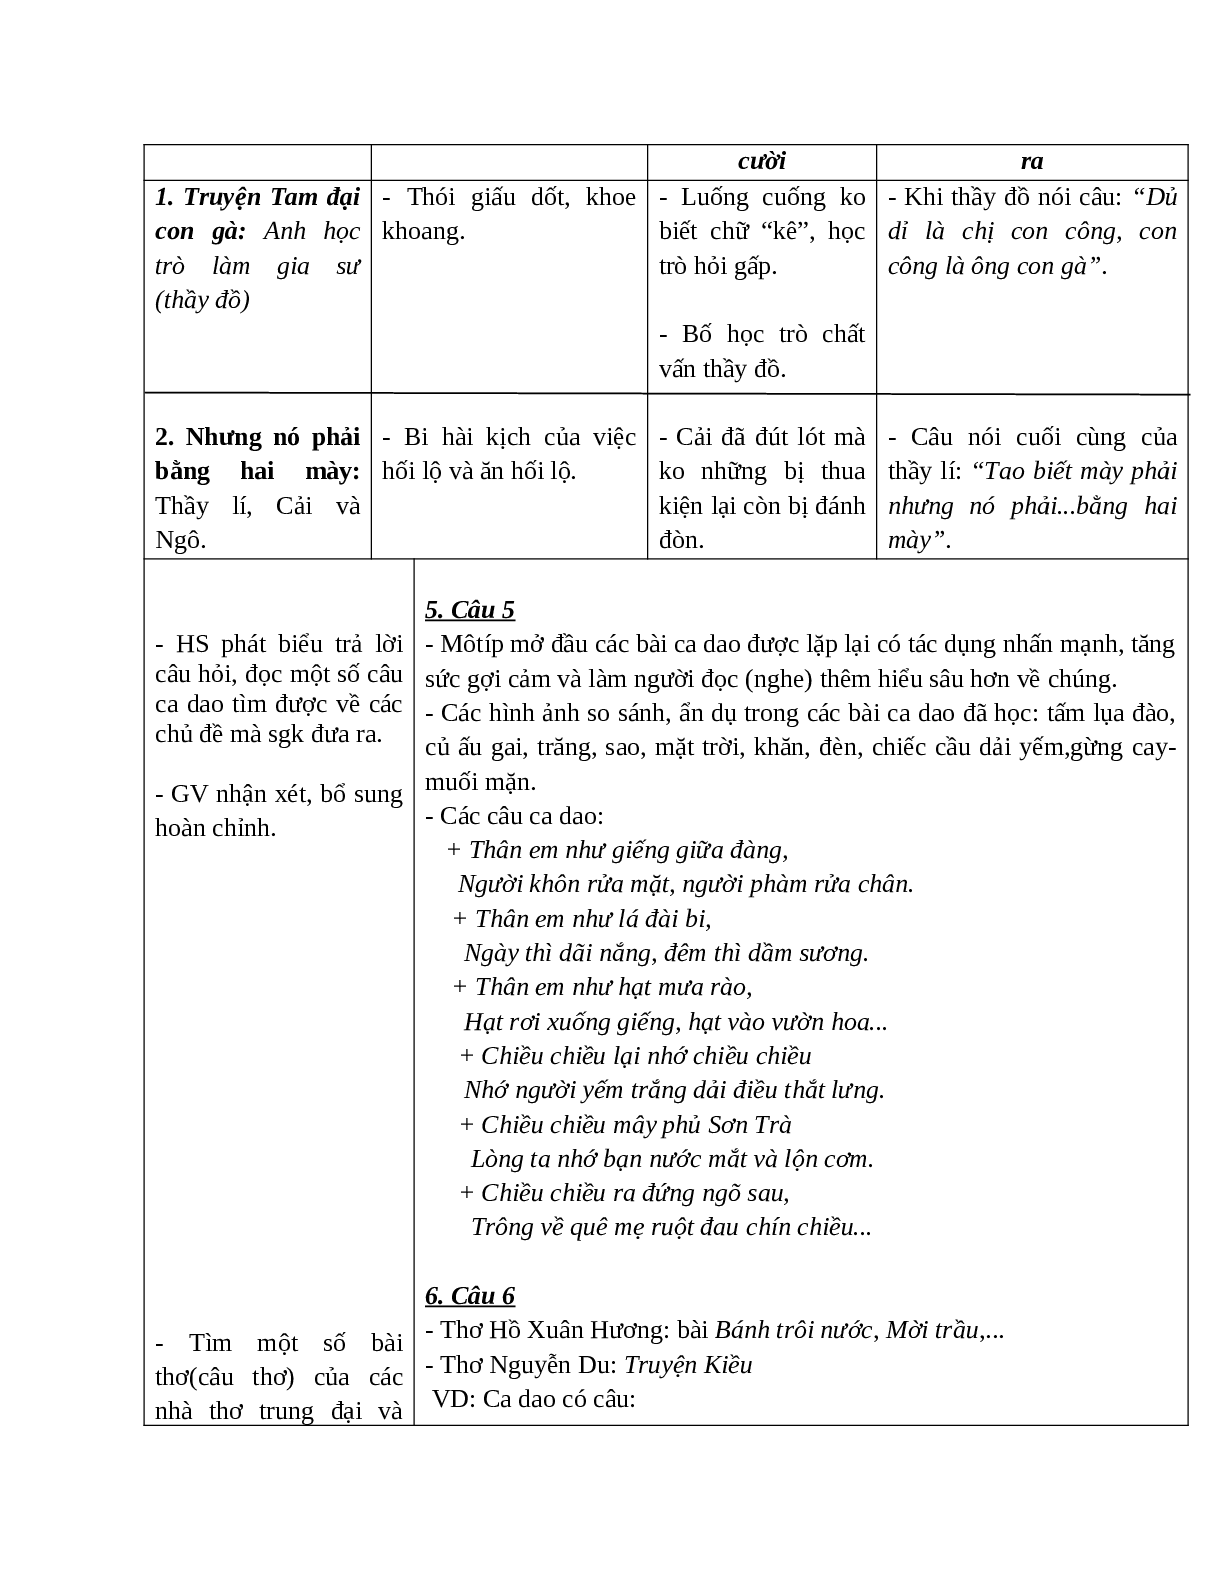 Giáo án Ngữ văn 10 tập 1 bài Ôn tập văn học dân gian Việt Nam mới nhất (trang 8)